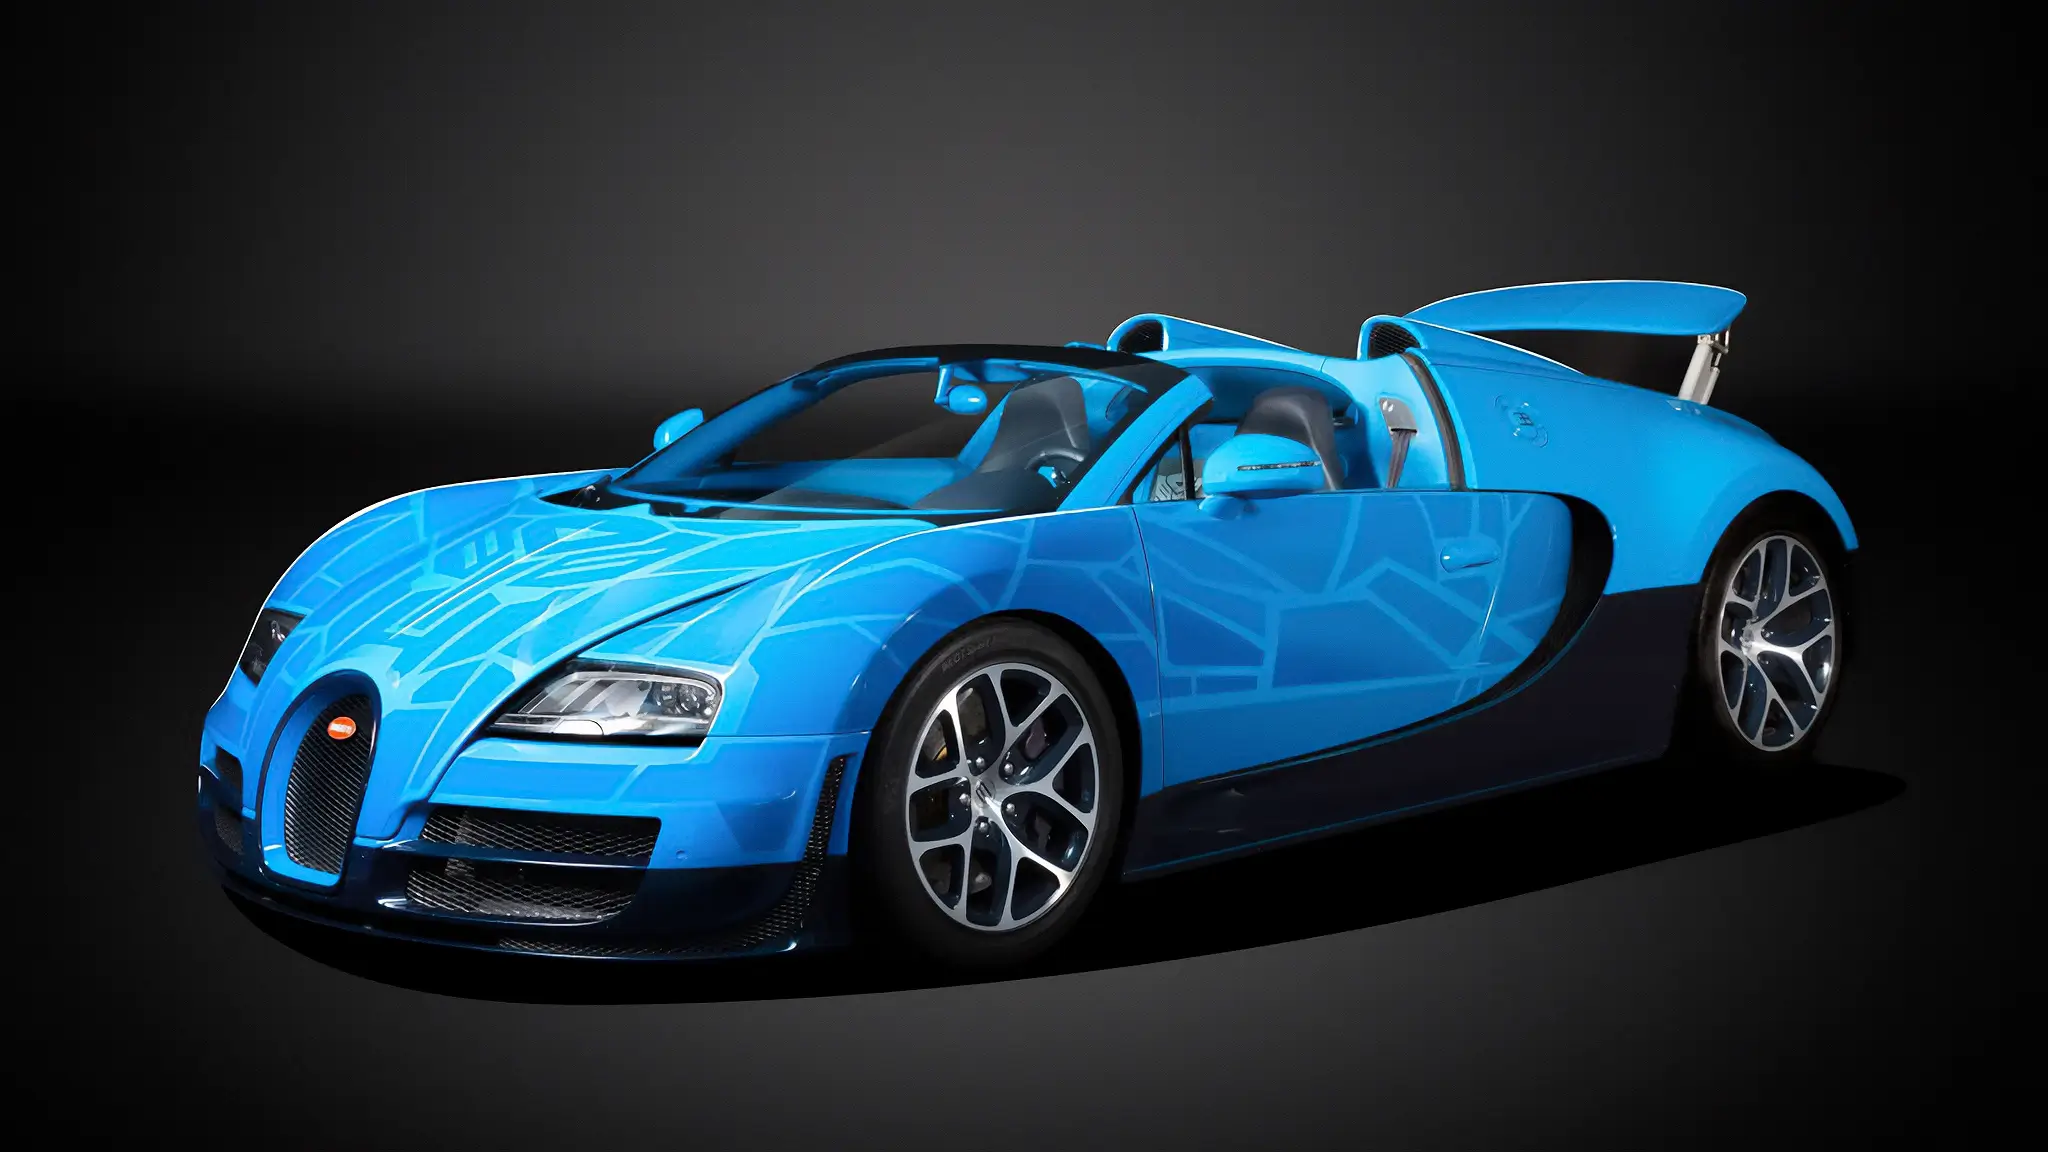 Bugatti Veyron único no mundo vai a leilão. Autobot não incluído